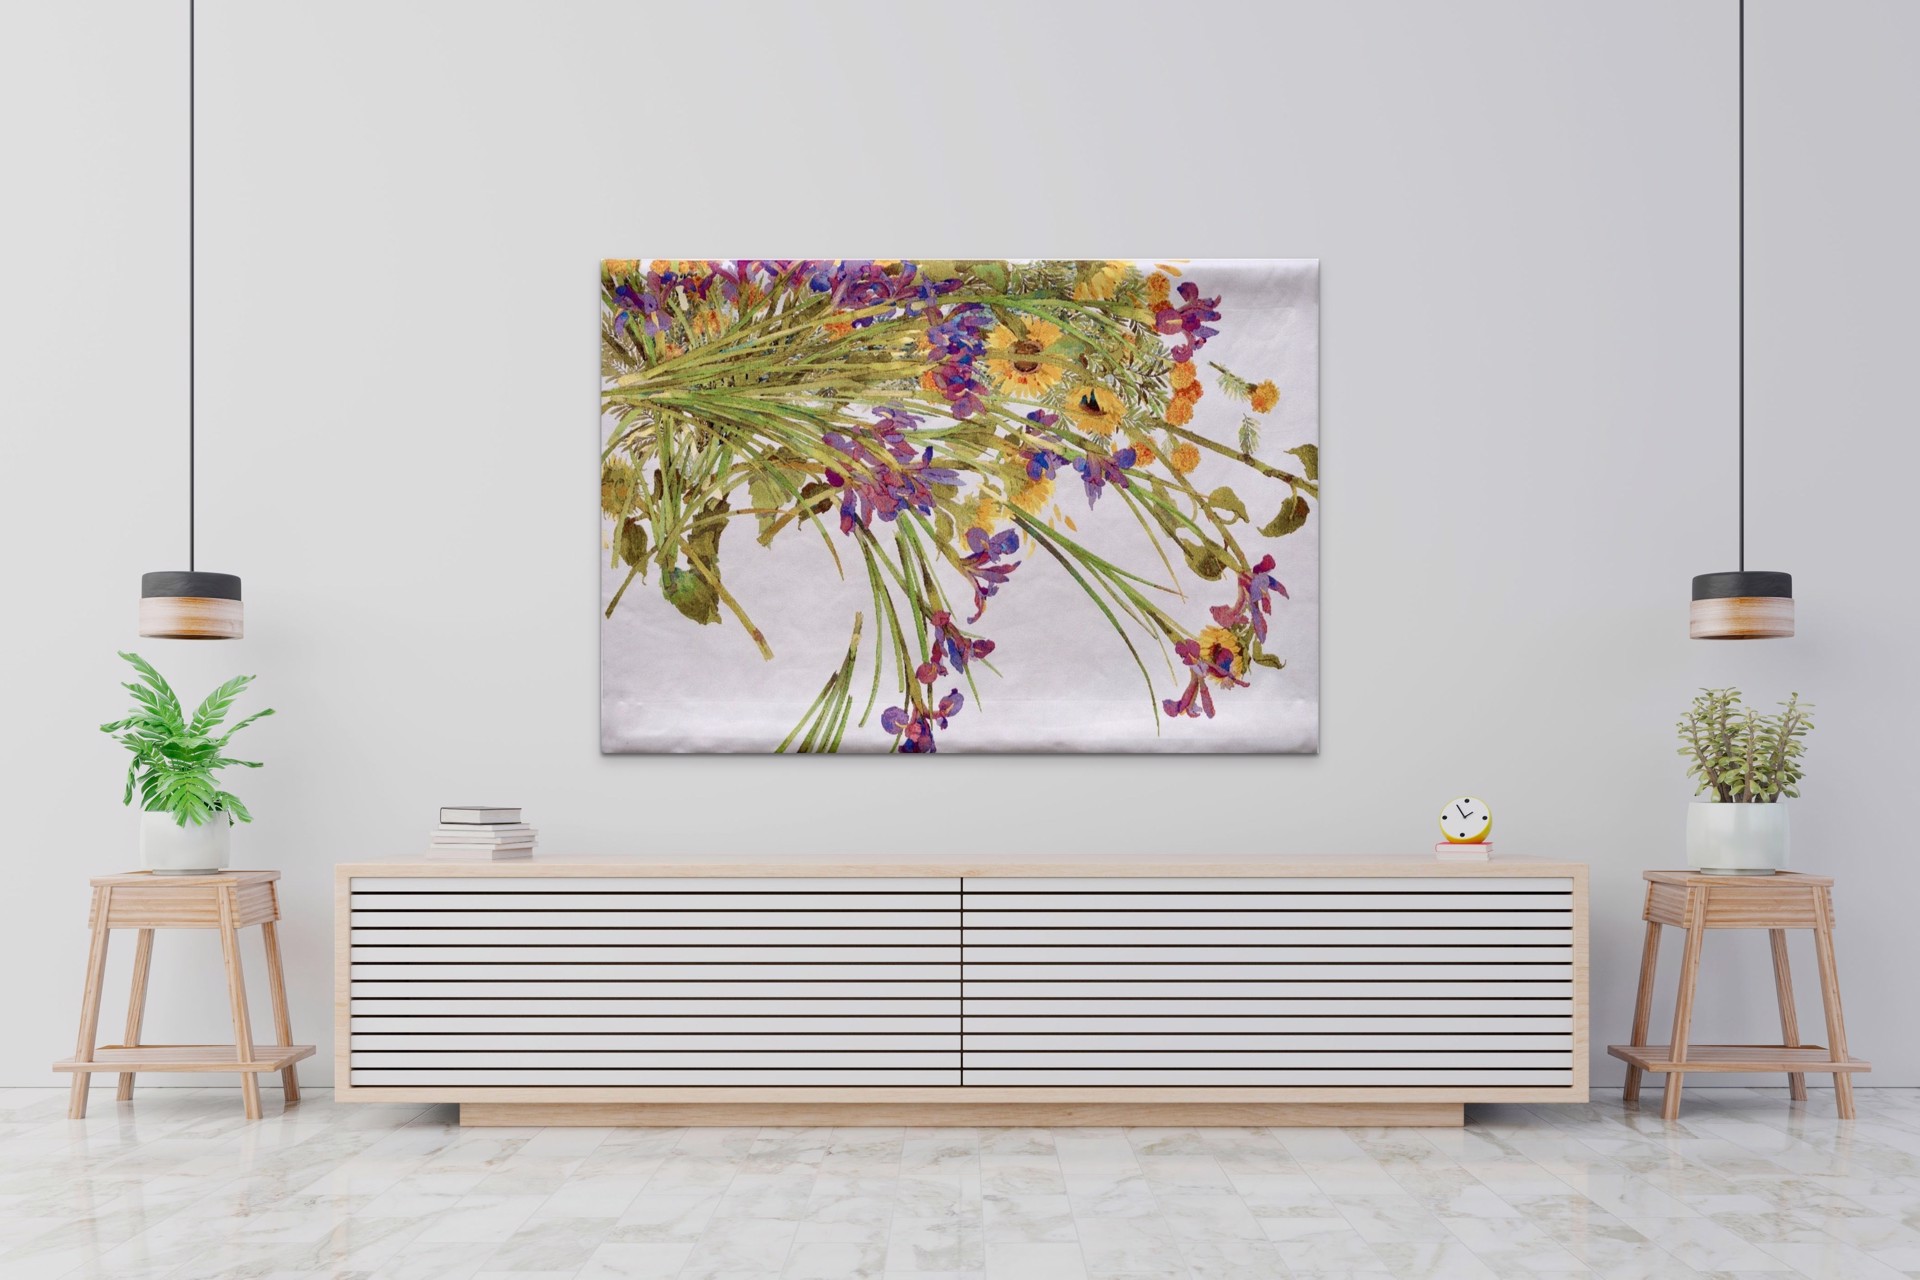 Flower Cascade - tapestry ltd ed. by Gary Bukovnik